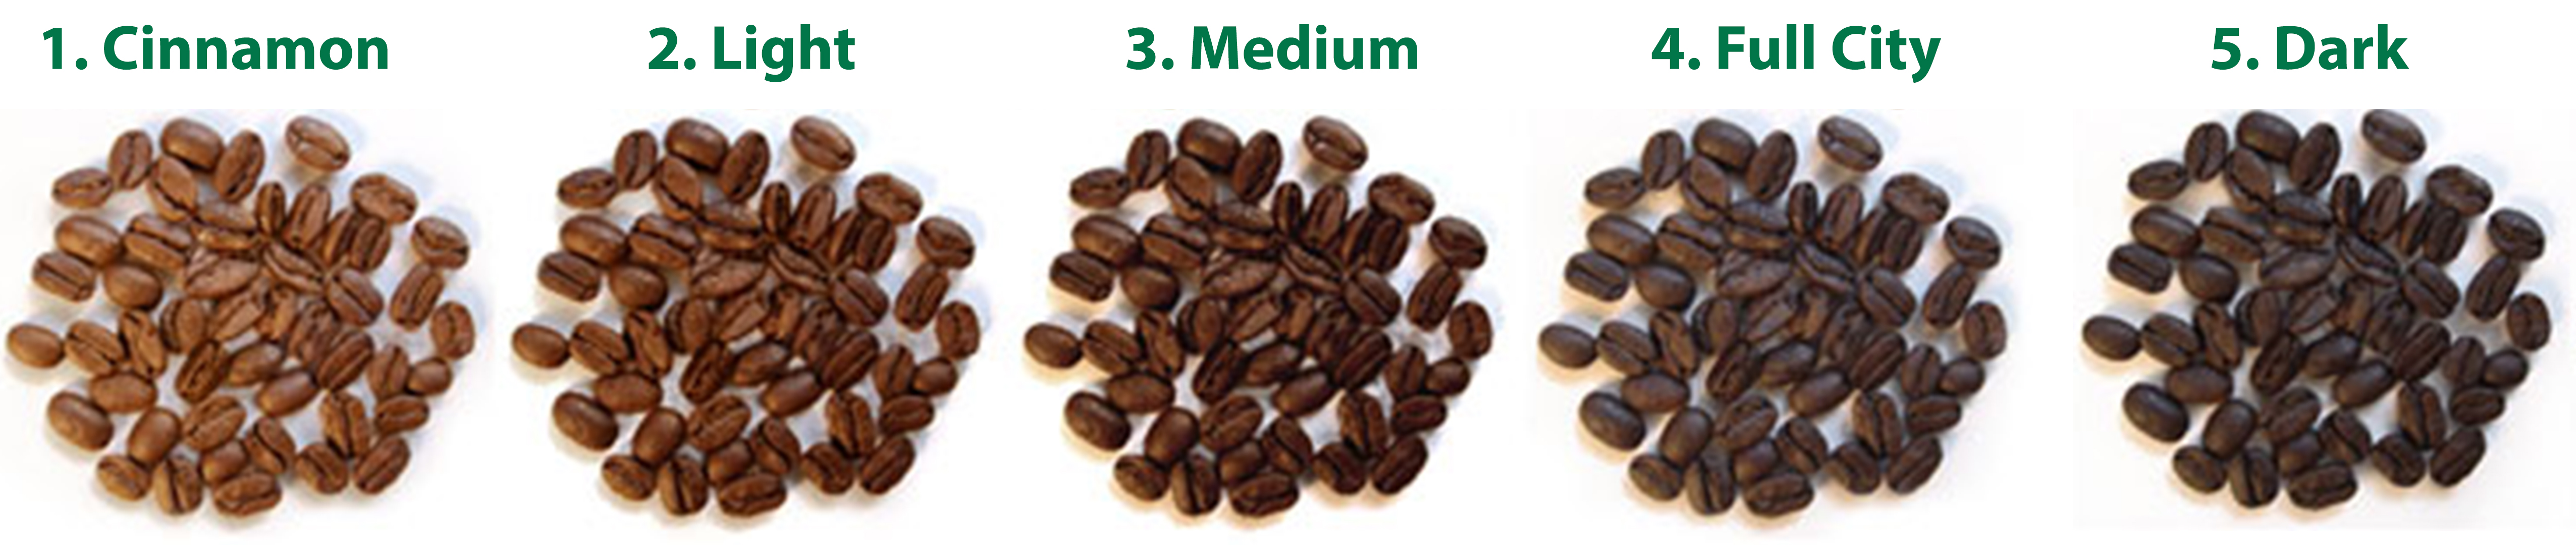 các cấp độ rang cà phê hạt